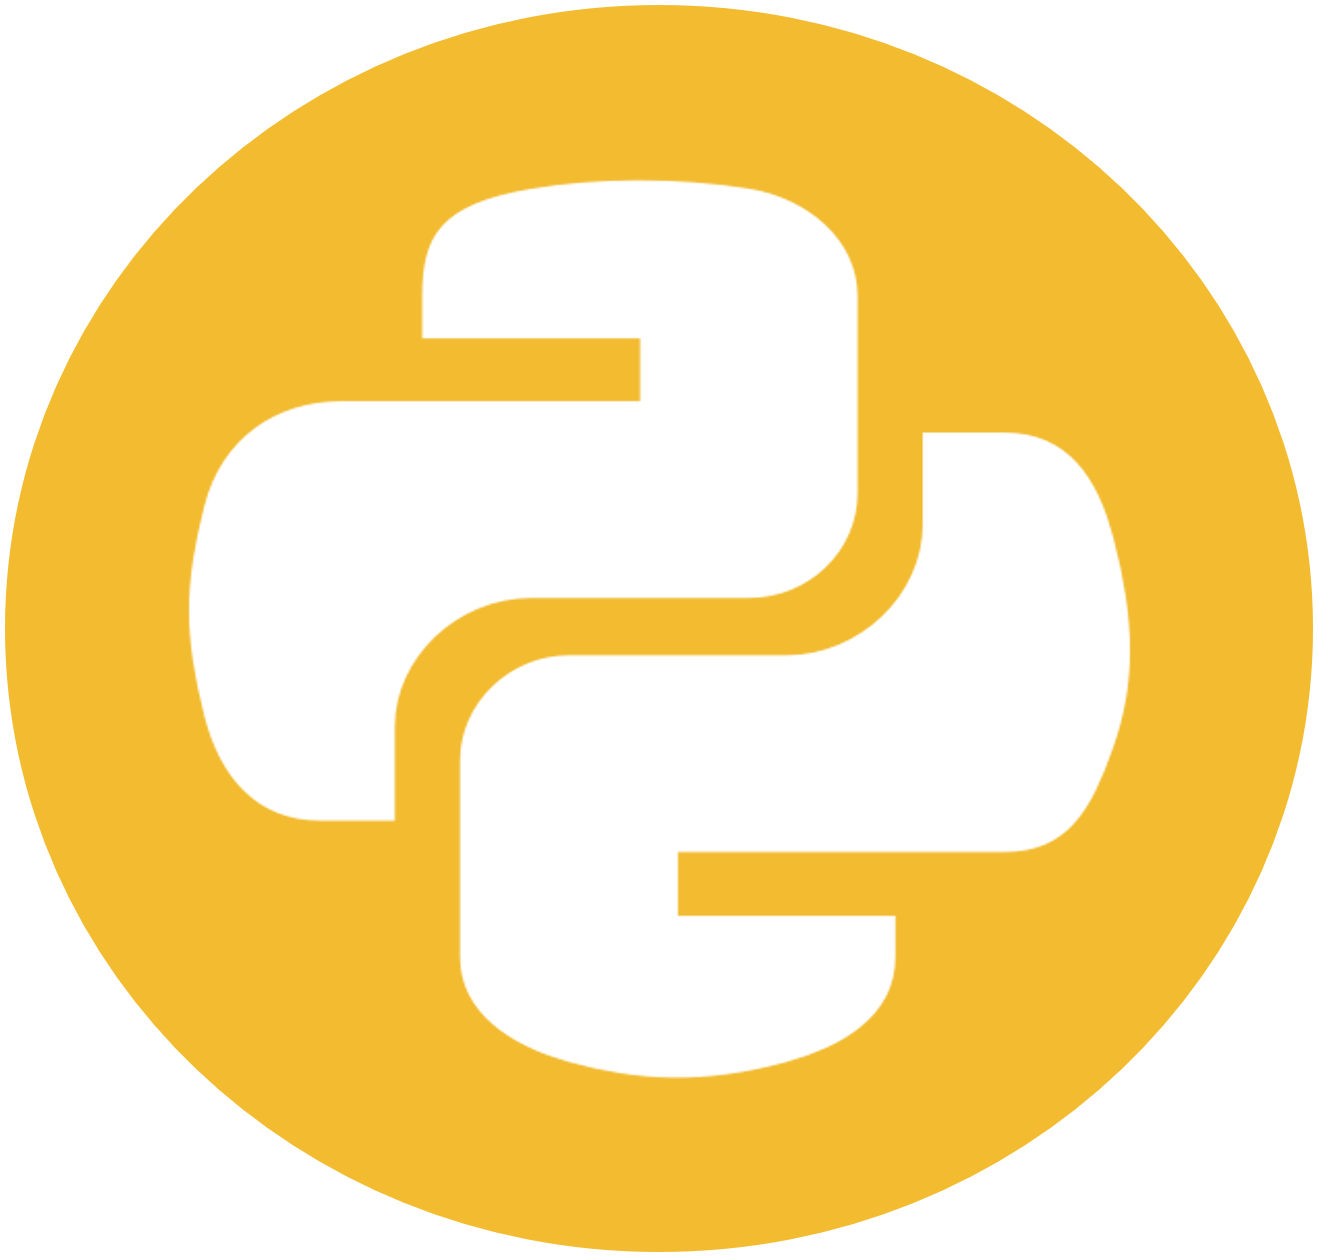 Python download image - wacaqwe